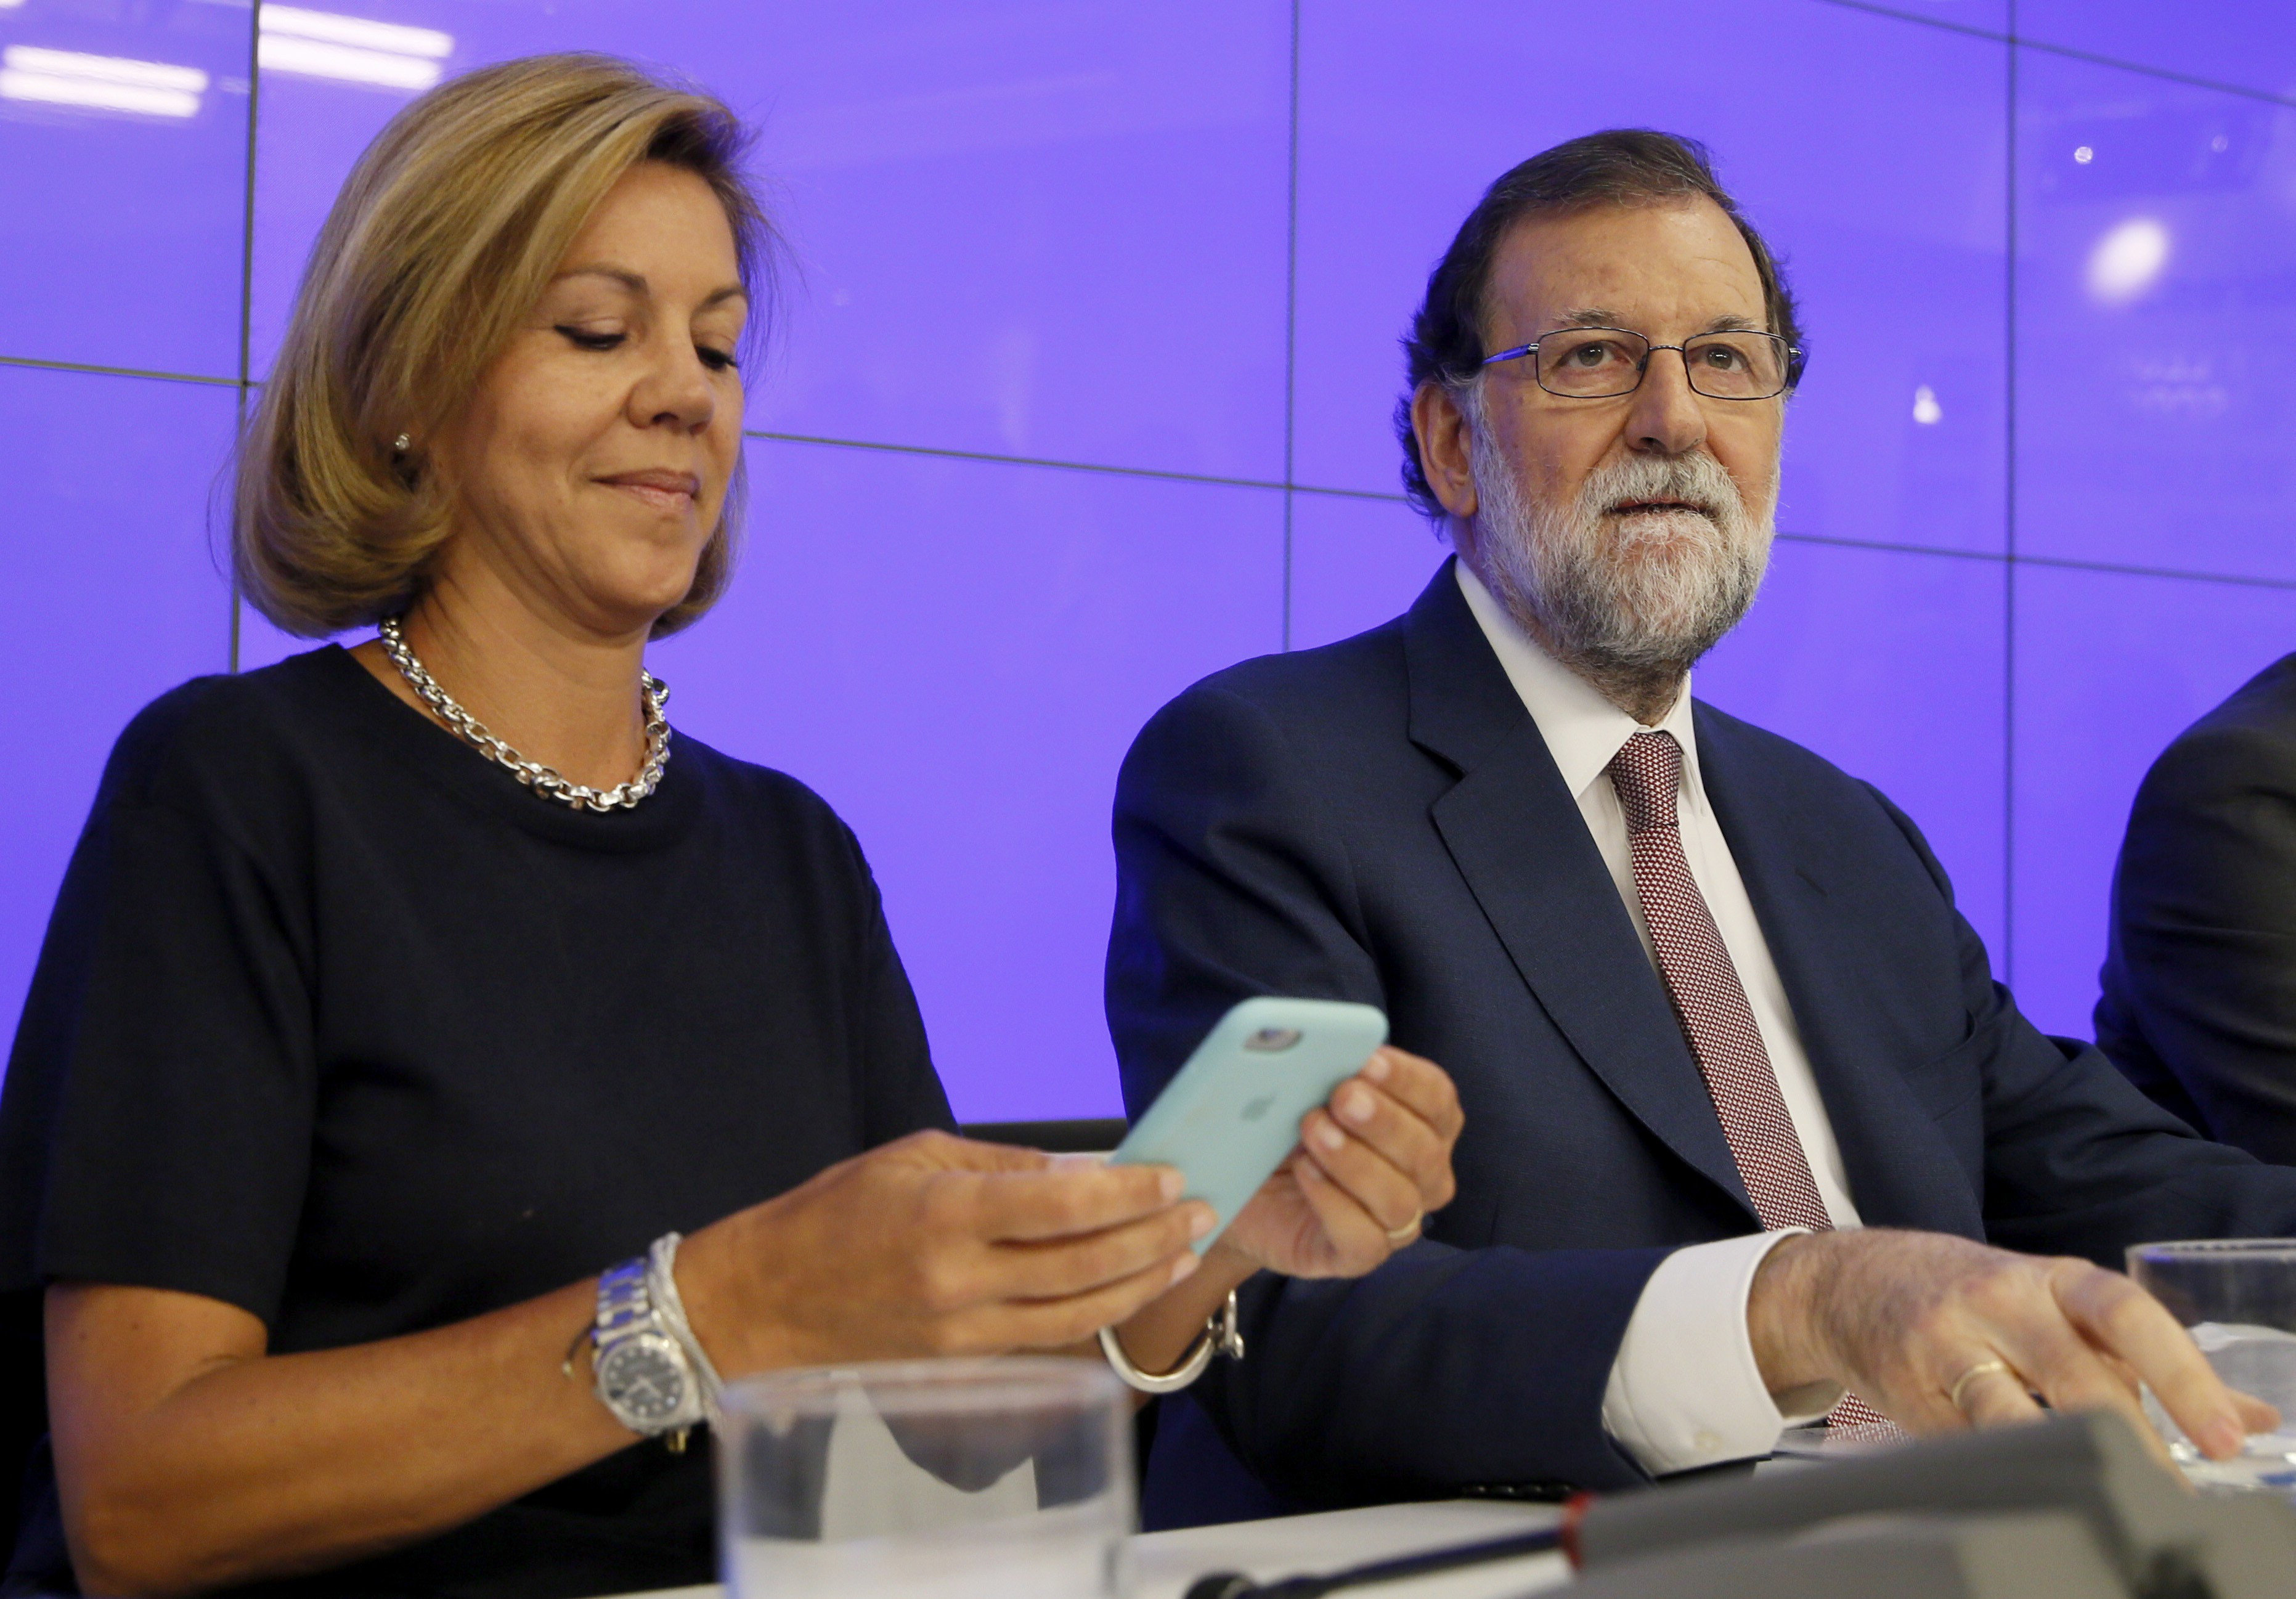 Mariano Rajoy y María Dolores de Cospedal presidiendo una reunión en Génova 13, sede delPP